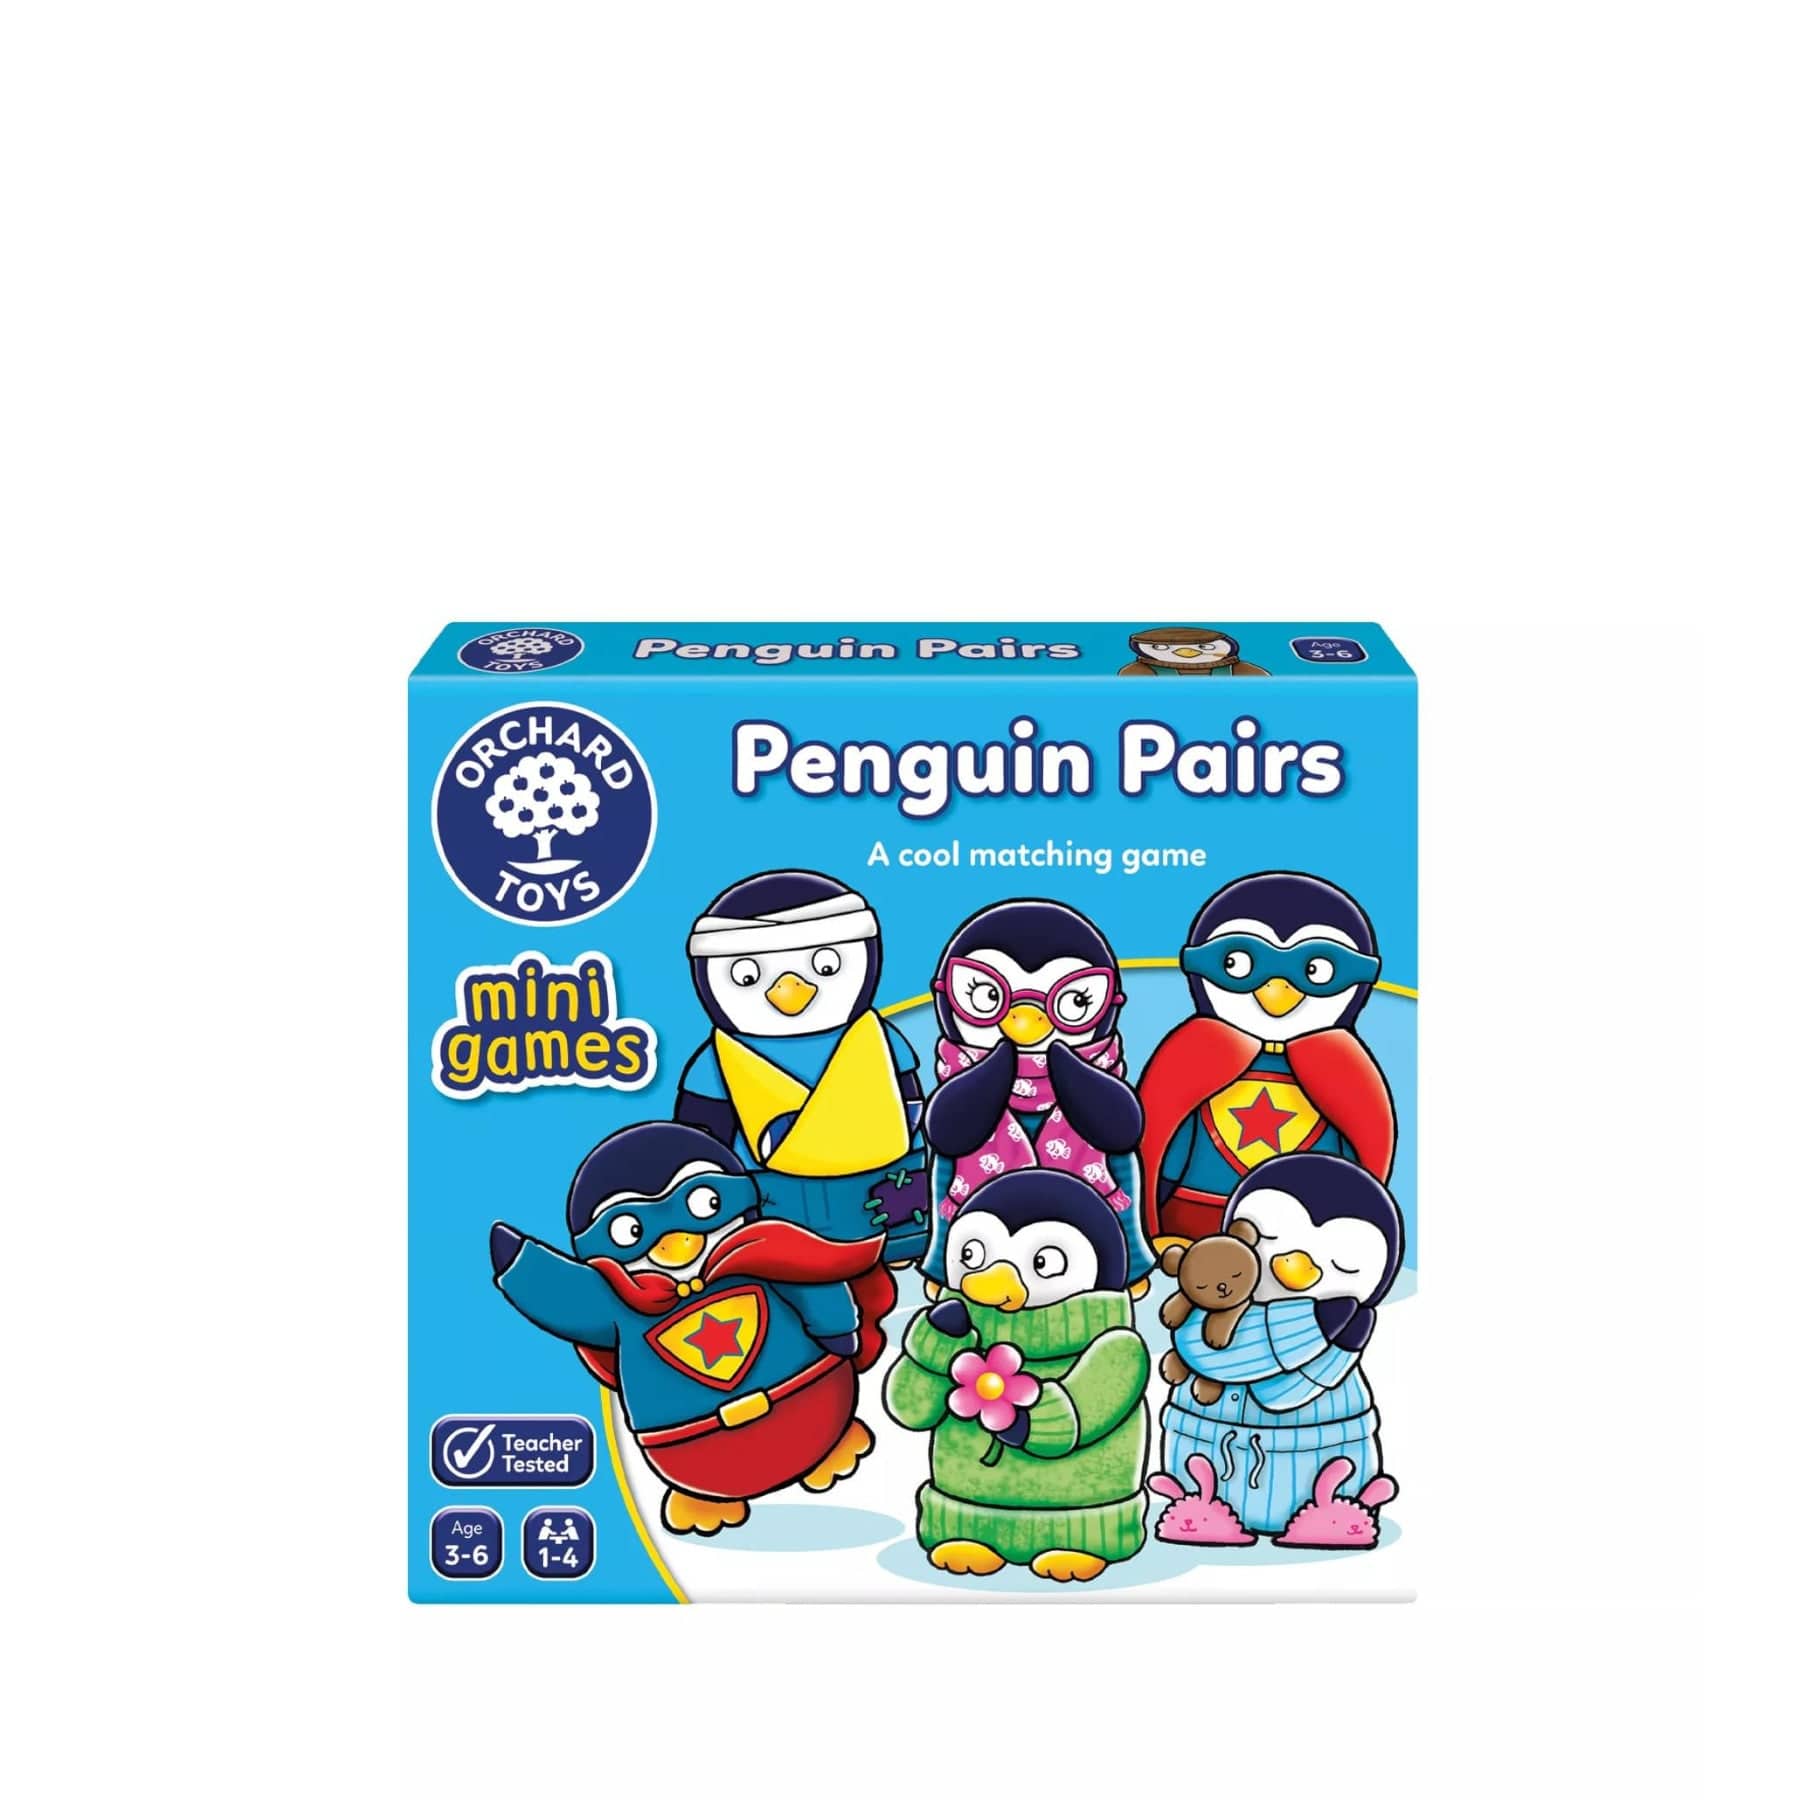 Penguin pairs mini game